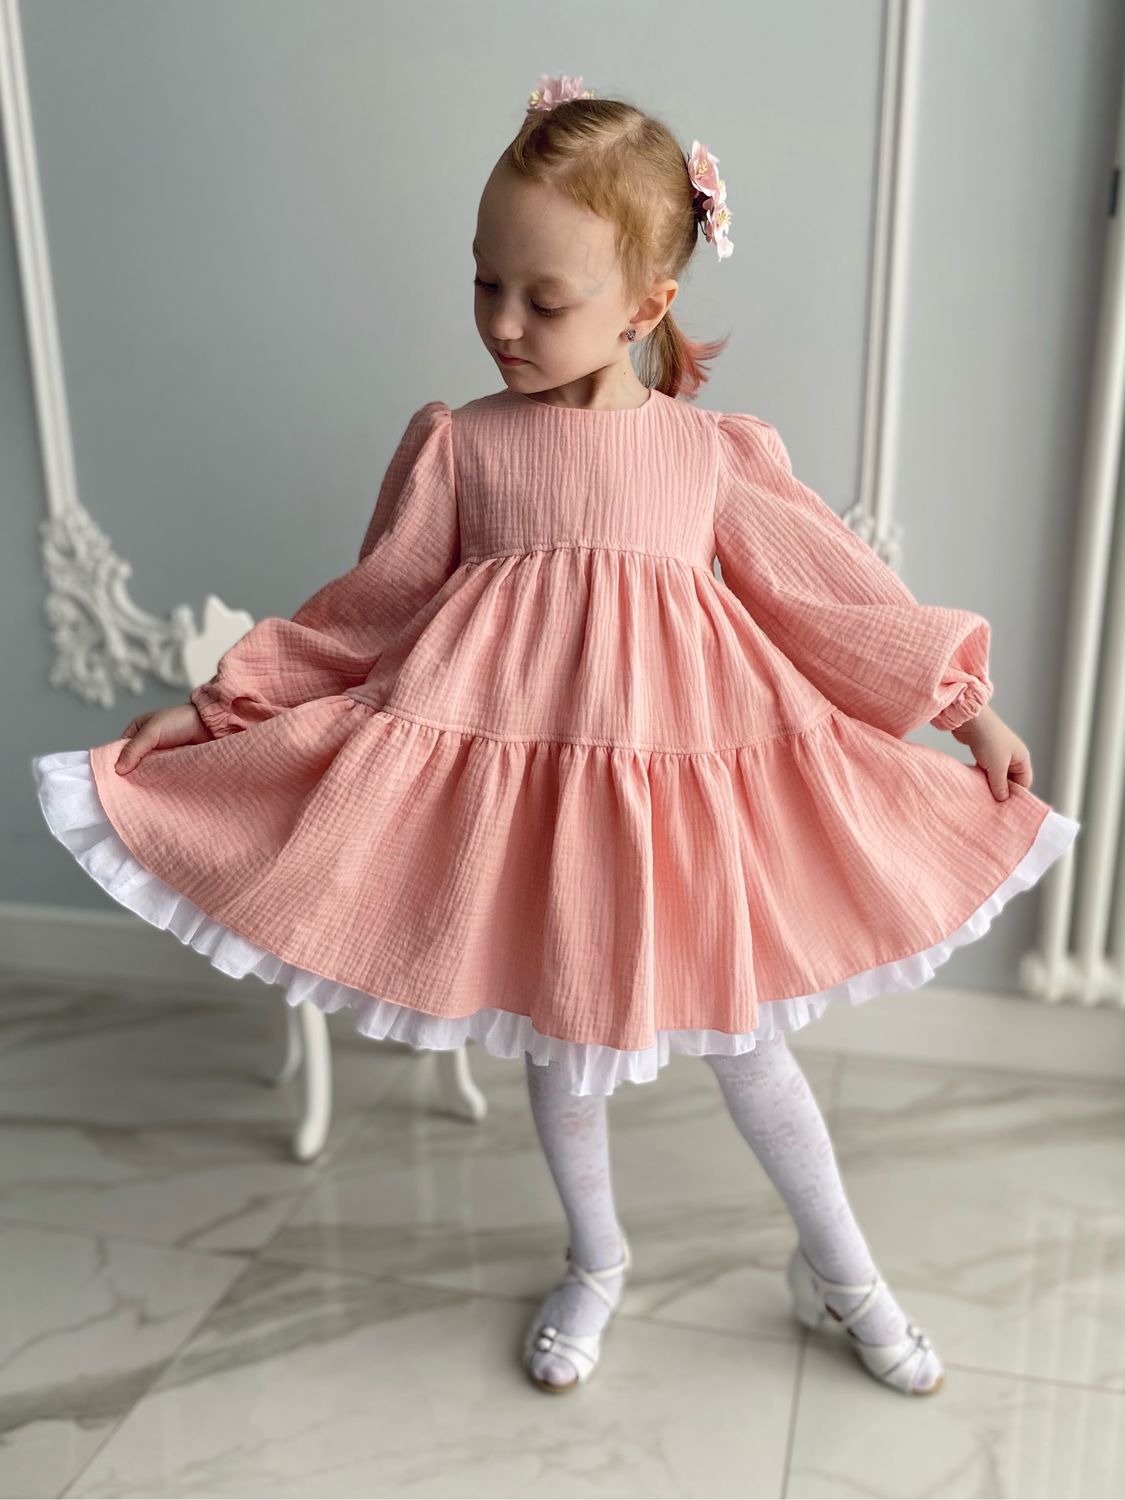 Купить платье для девочки: детские платья недорого в интернет-магазине GroupPrice